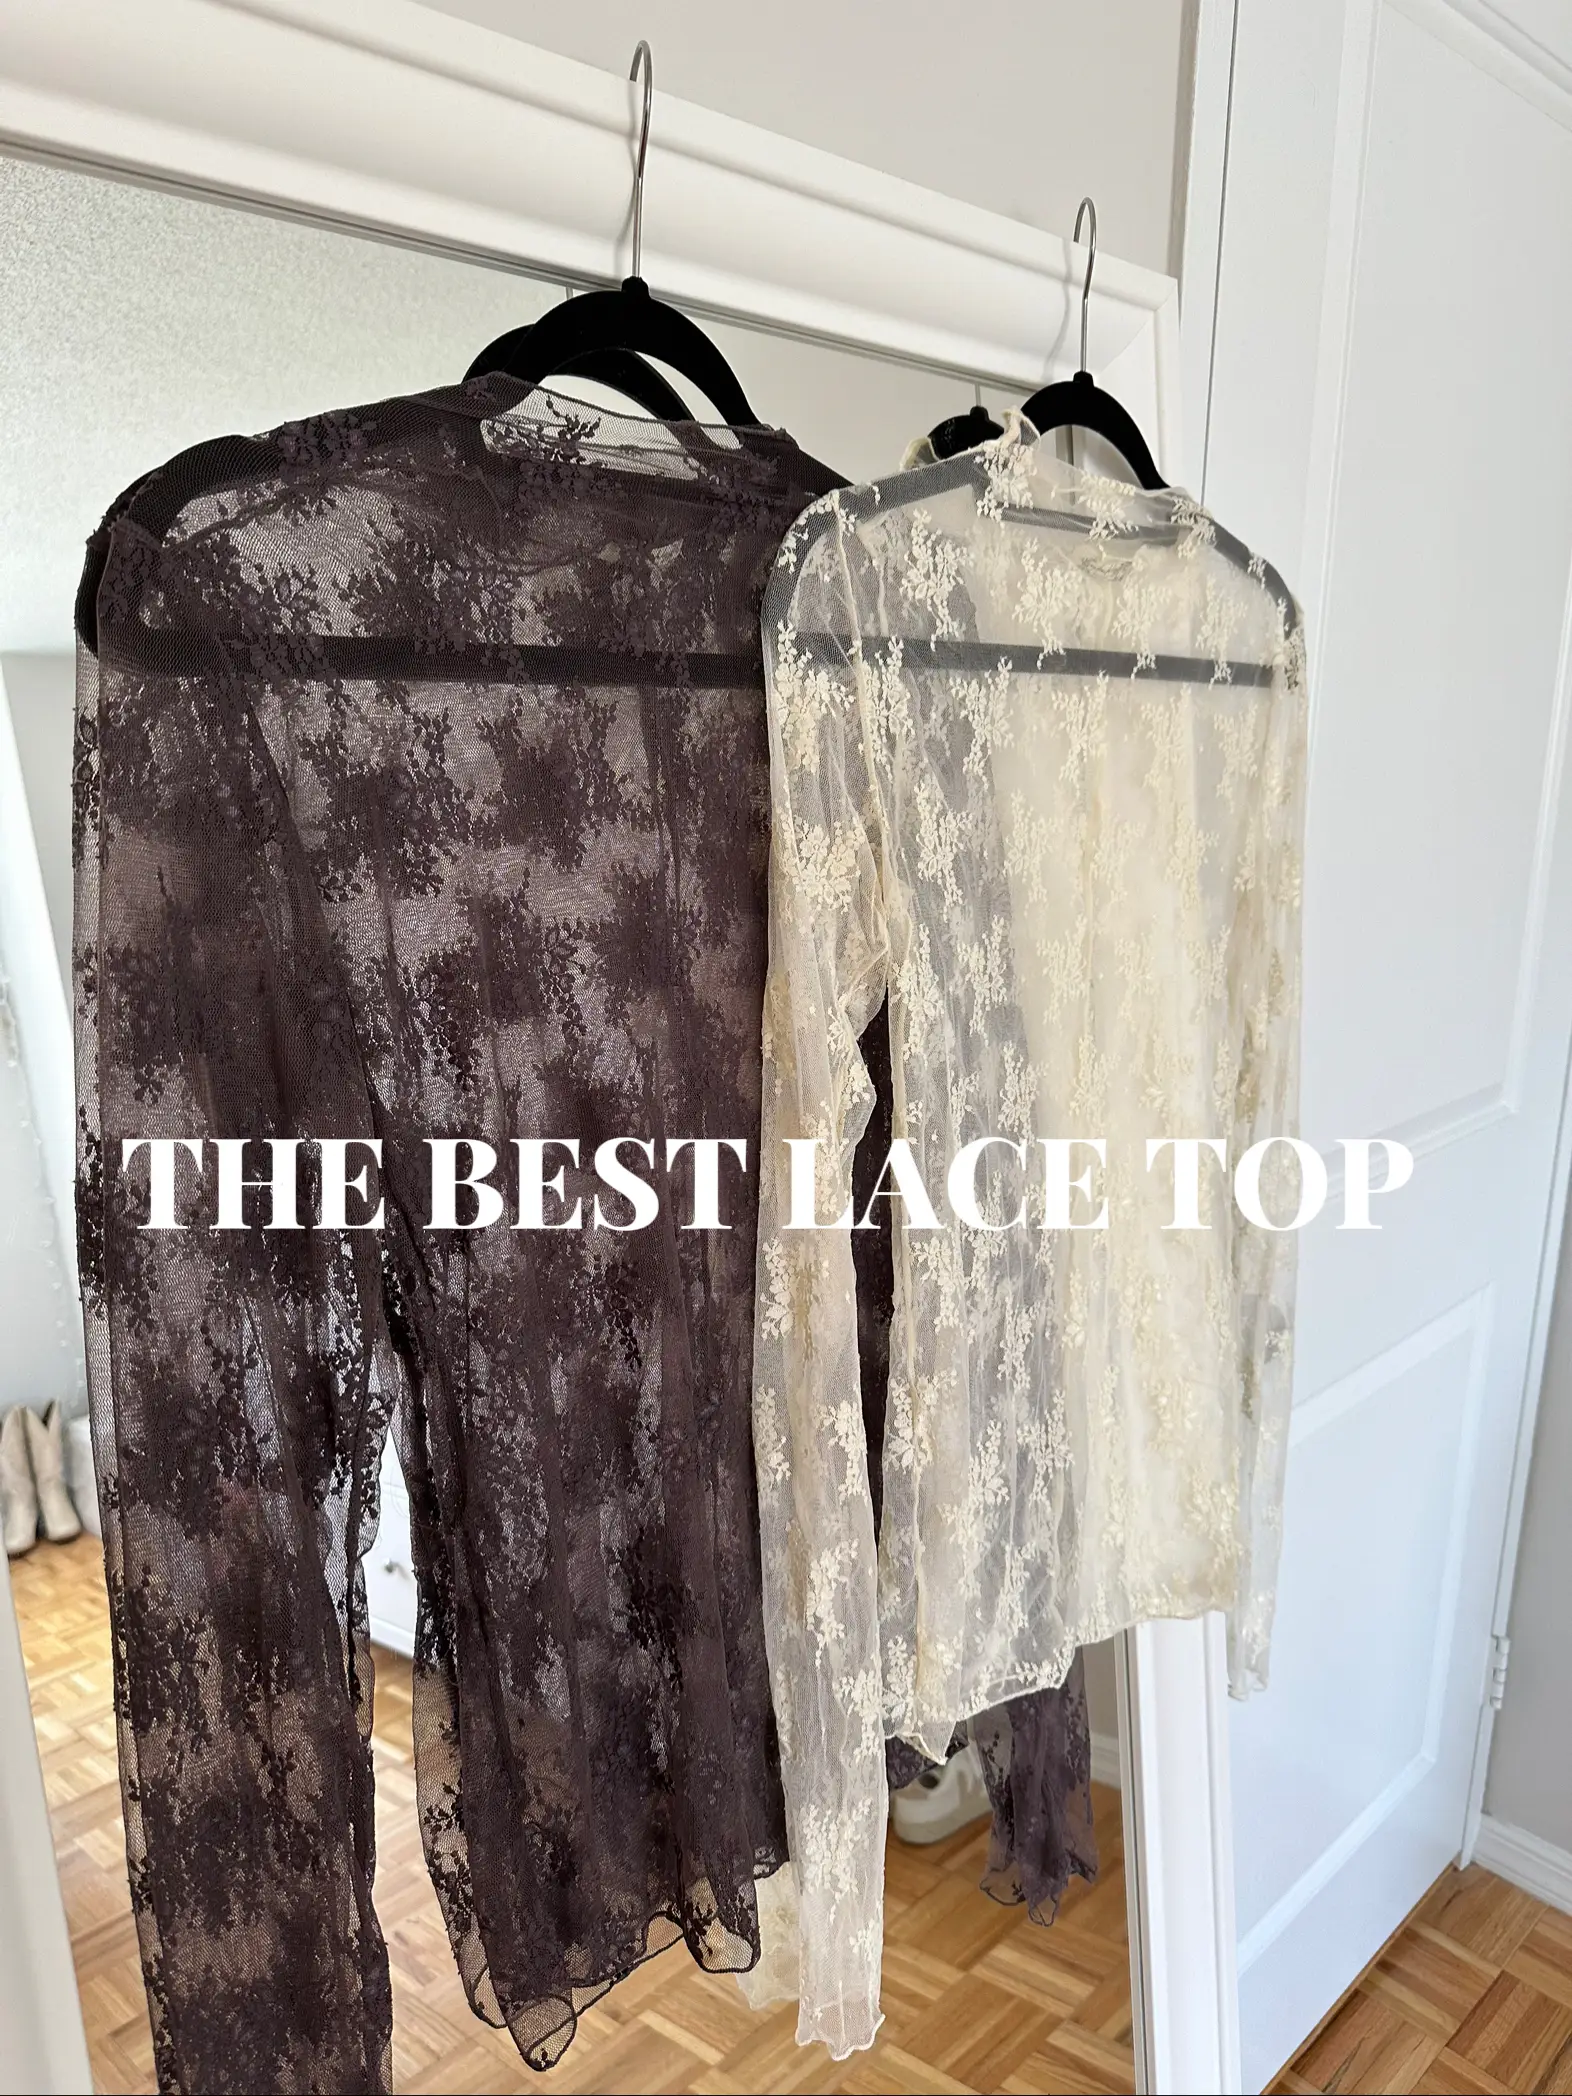 Amelia Lace Top - Sand, Fashion Nova, Knit Tops